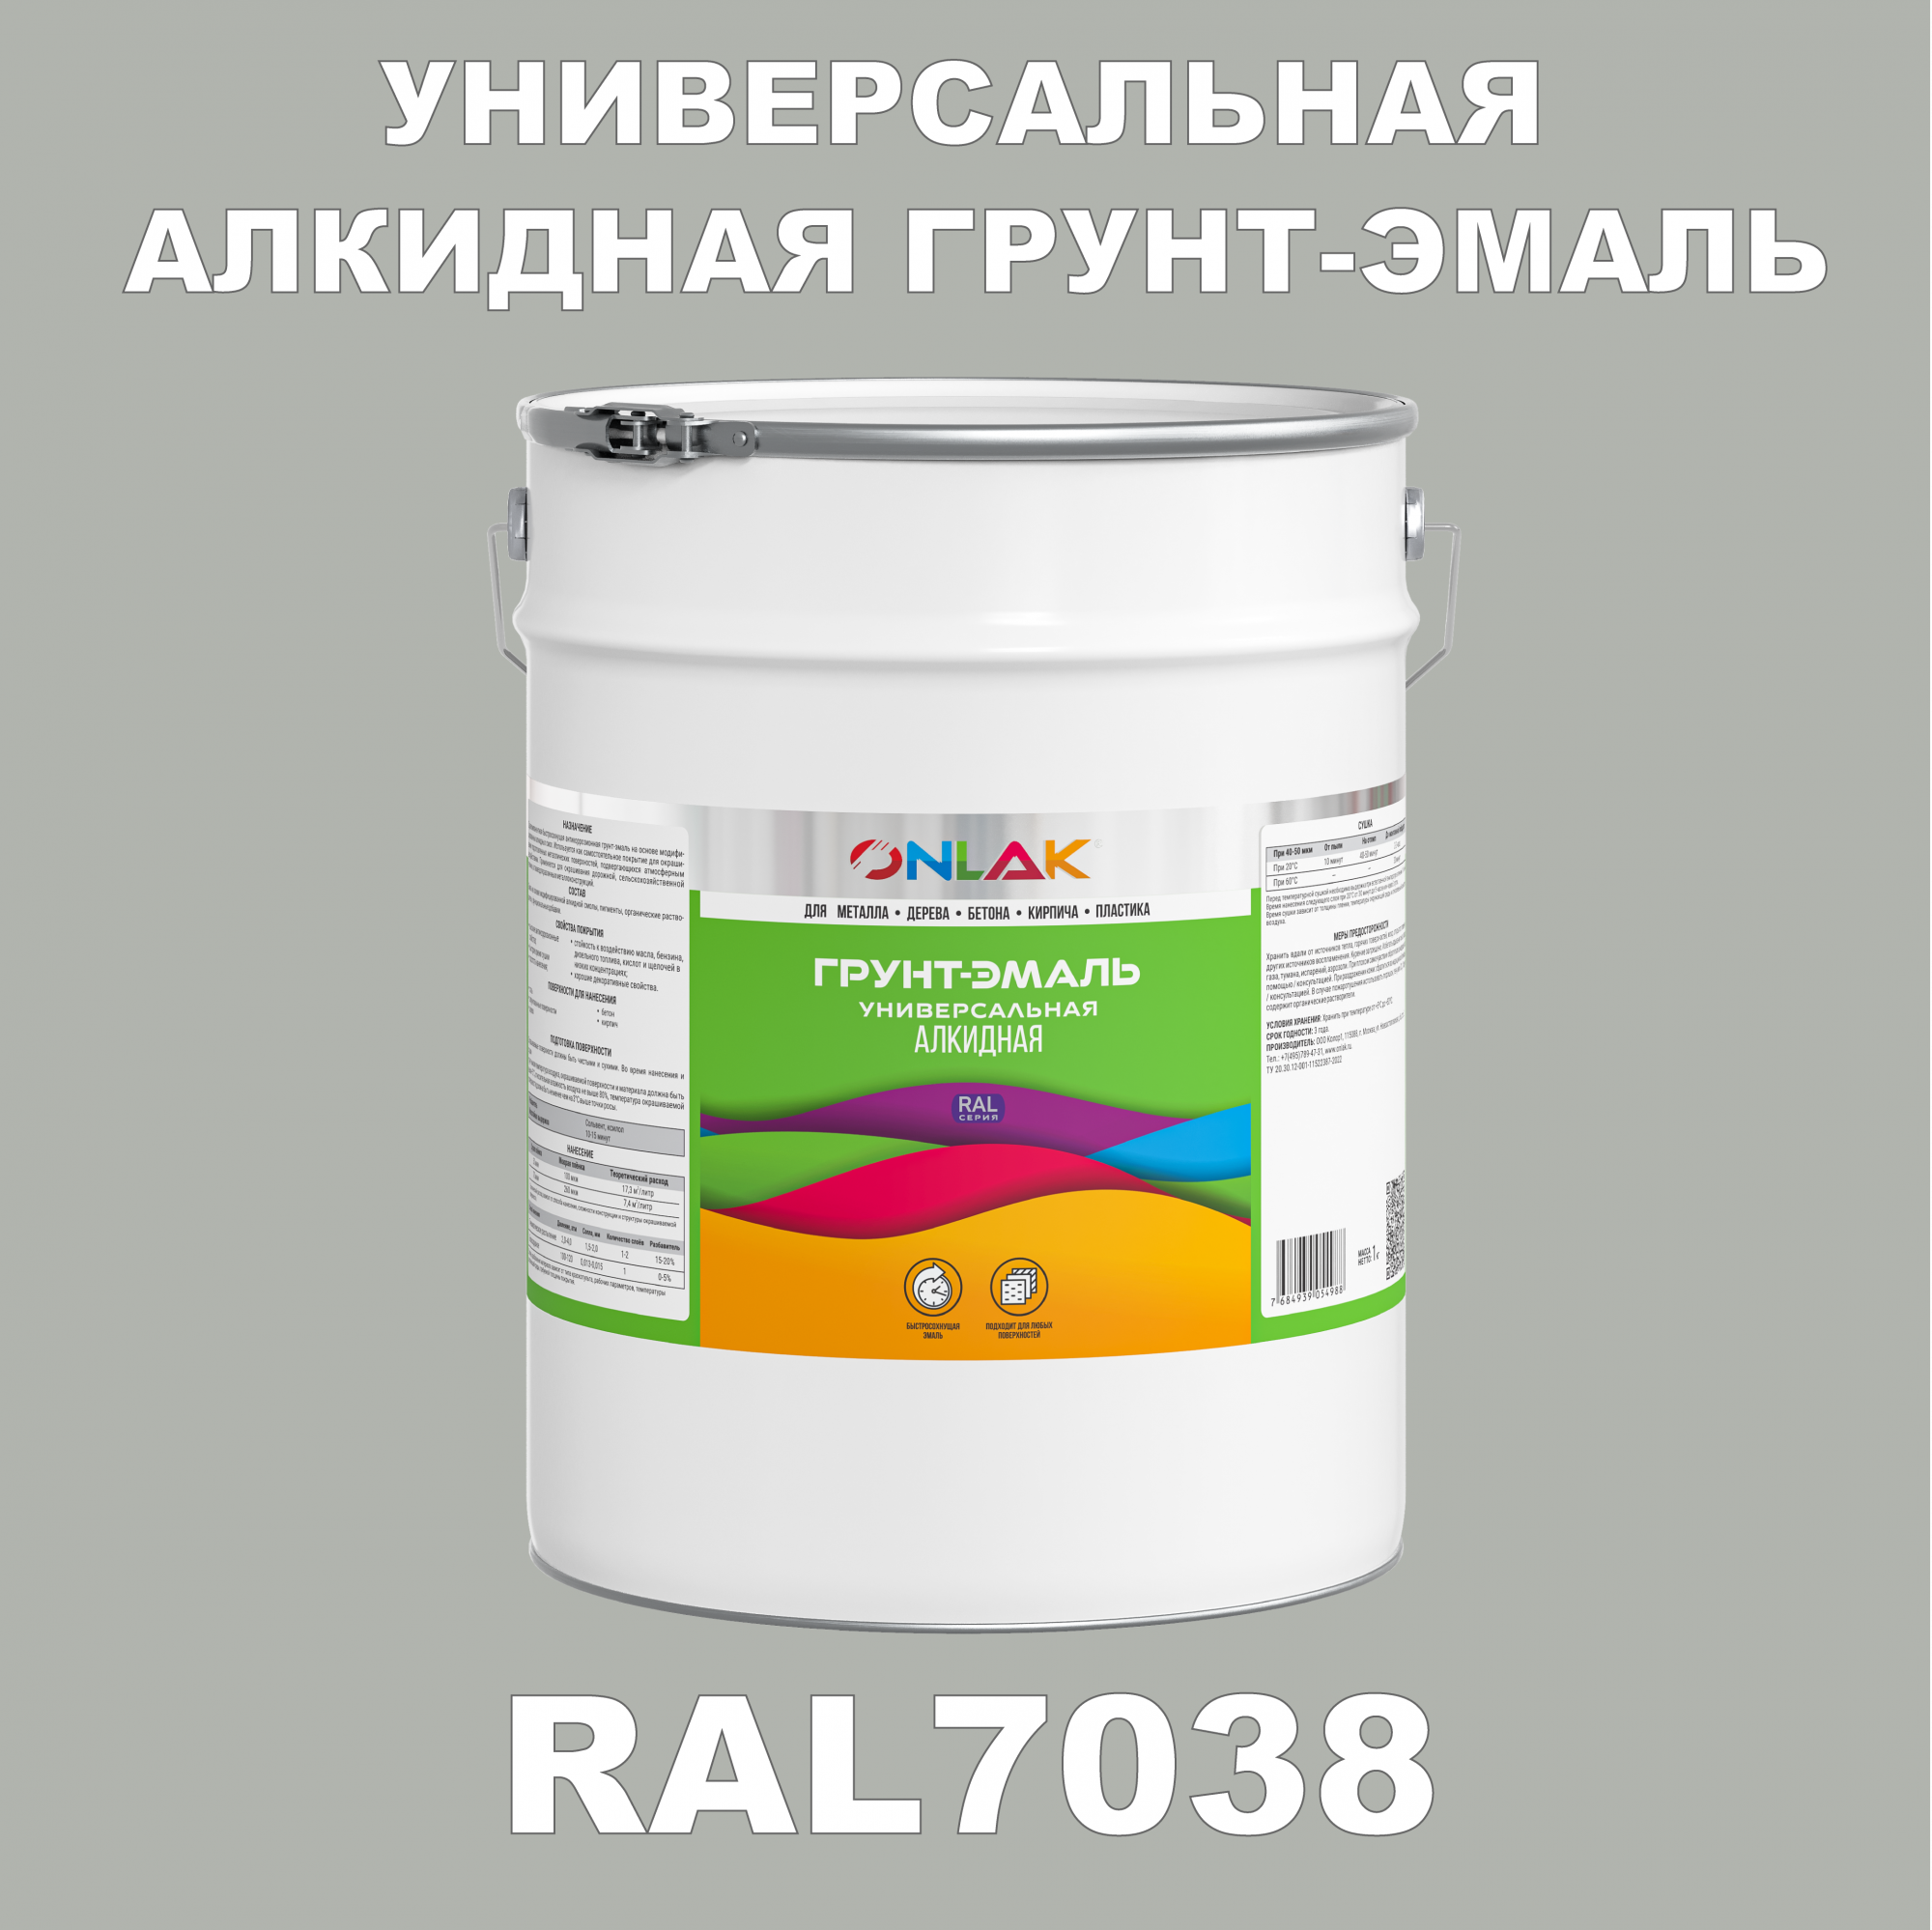 Грунт-эмаль ONLAK 1К RAL7038 антикоррозионная алкидная по металлу по ржавчине 20 кг грунт эмаль престиж по ржавчине алкидная зеленая 1 9 кг